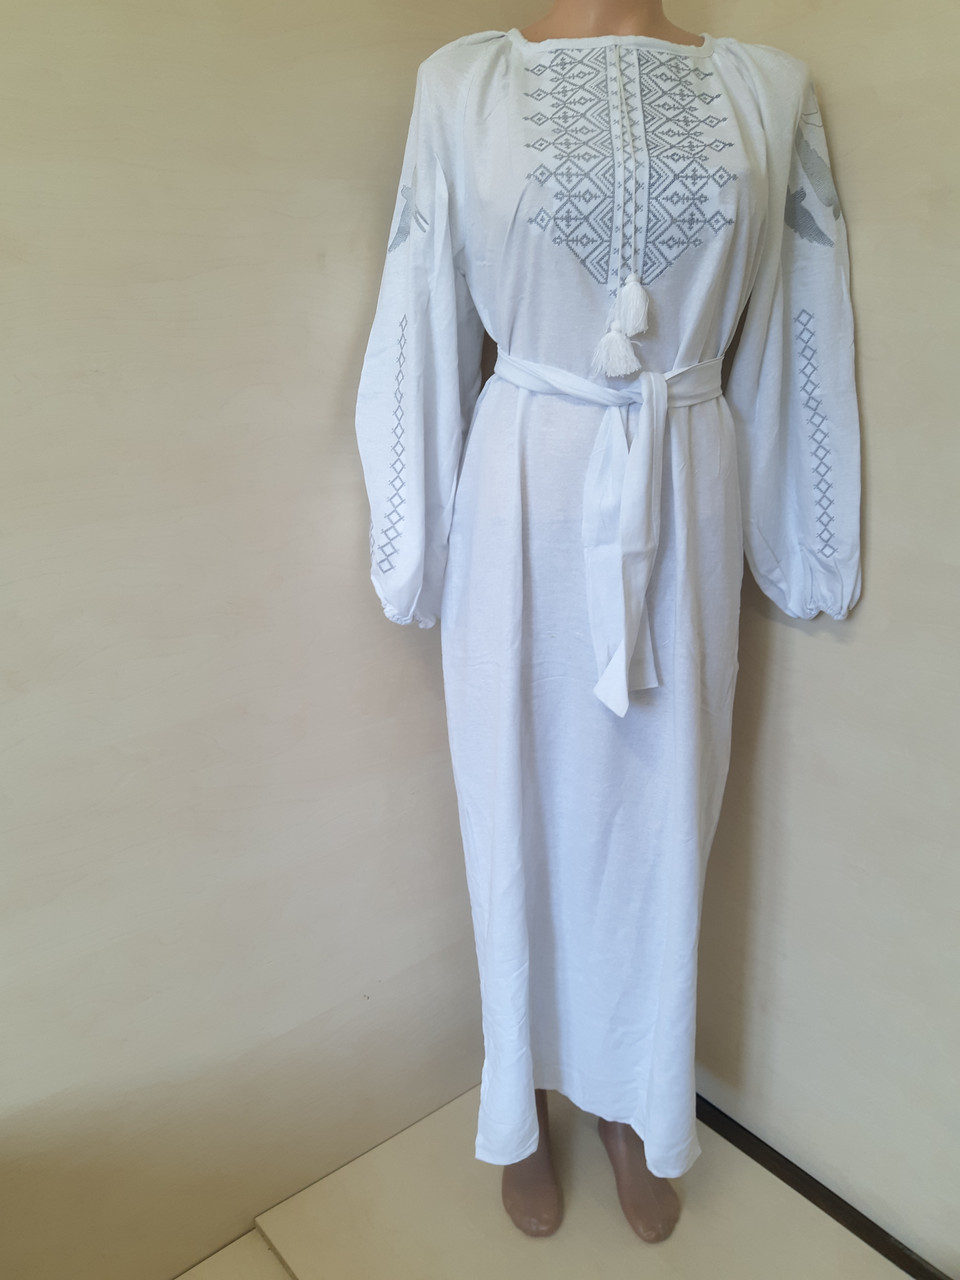 Лляне плаття Вишиванка жіноче для пари максі бежеве сіра вишивка р.48 50